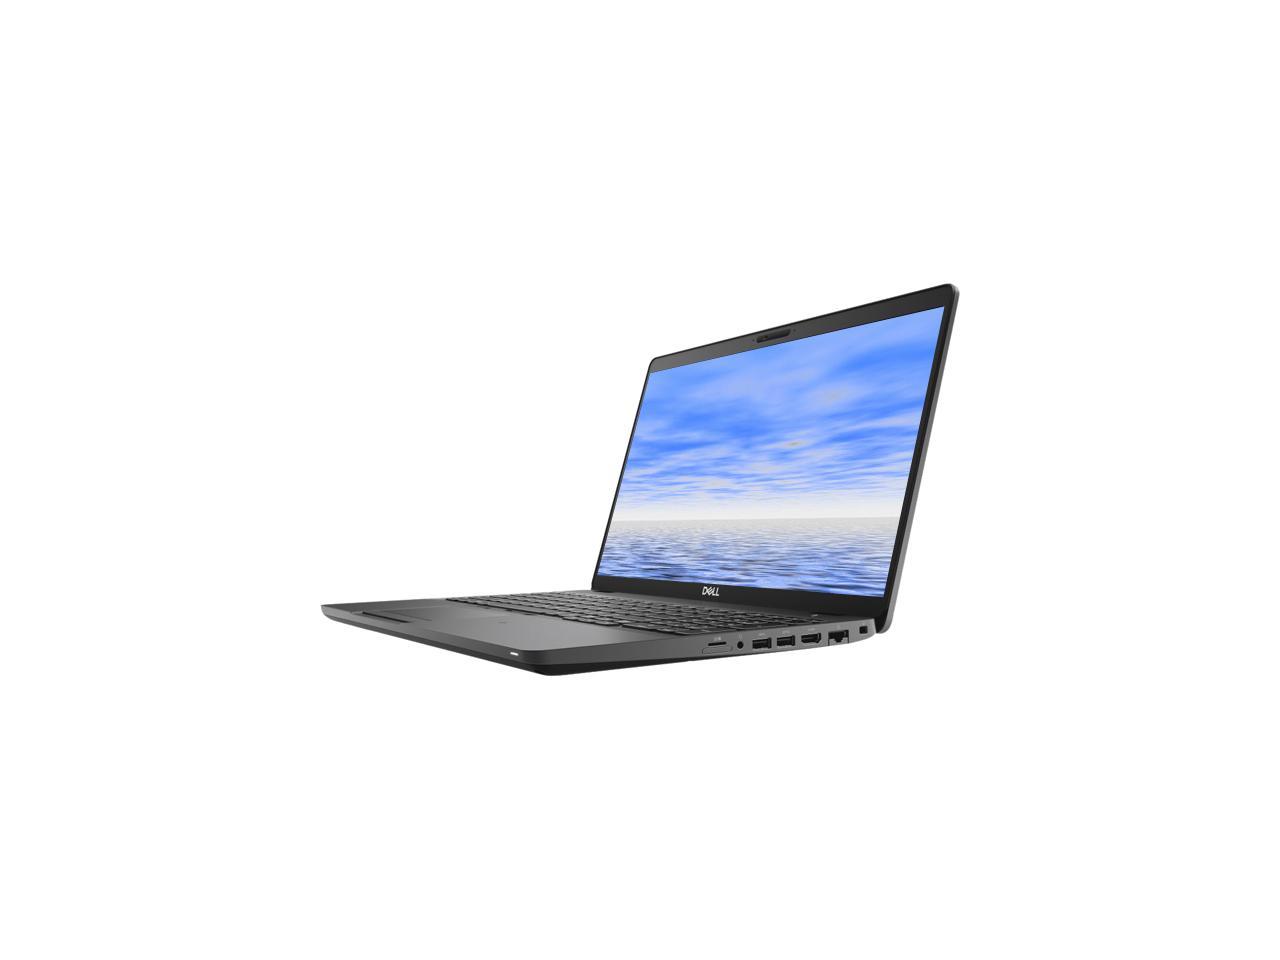 DELL Laptop Precision 3540 Intel Core i7 8th Gen 8565U (1.80 GHz) 8 GB Memory 256 GB SSD 15.6" Windows 10 Pro